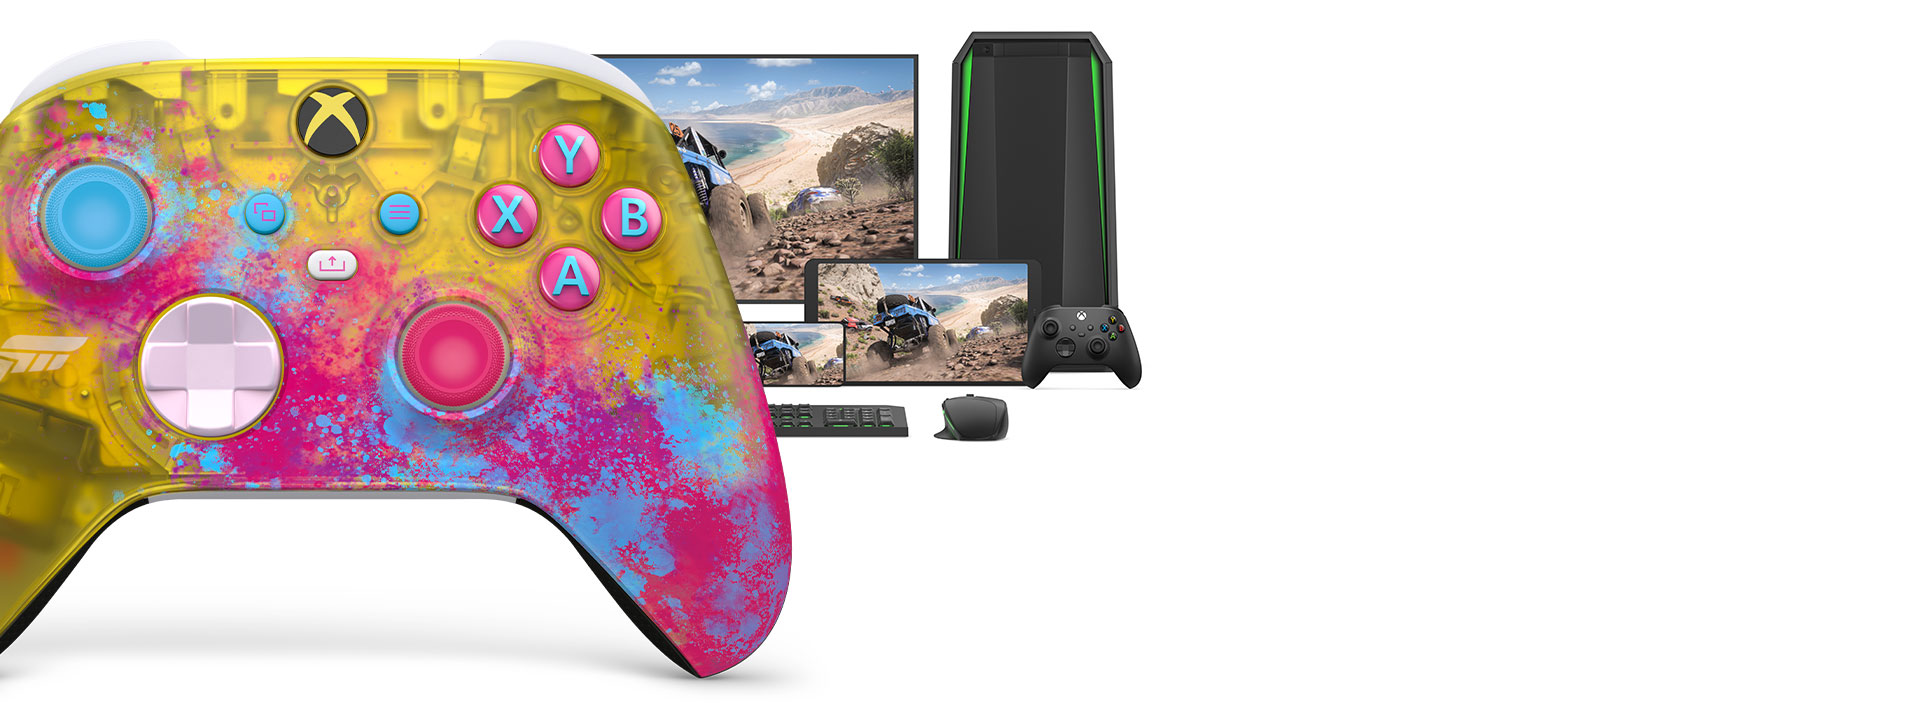 Kontroler bezprzewodowy Xbox w wersji Forza Horizon 5 razem z komputerem, telewizorem i konsolą Xbox Series S